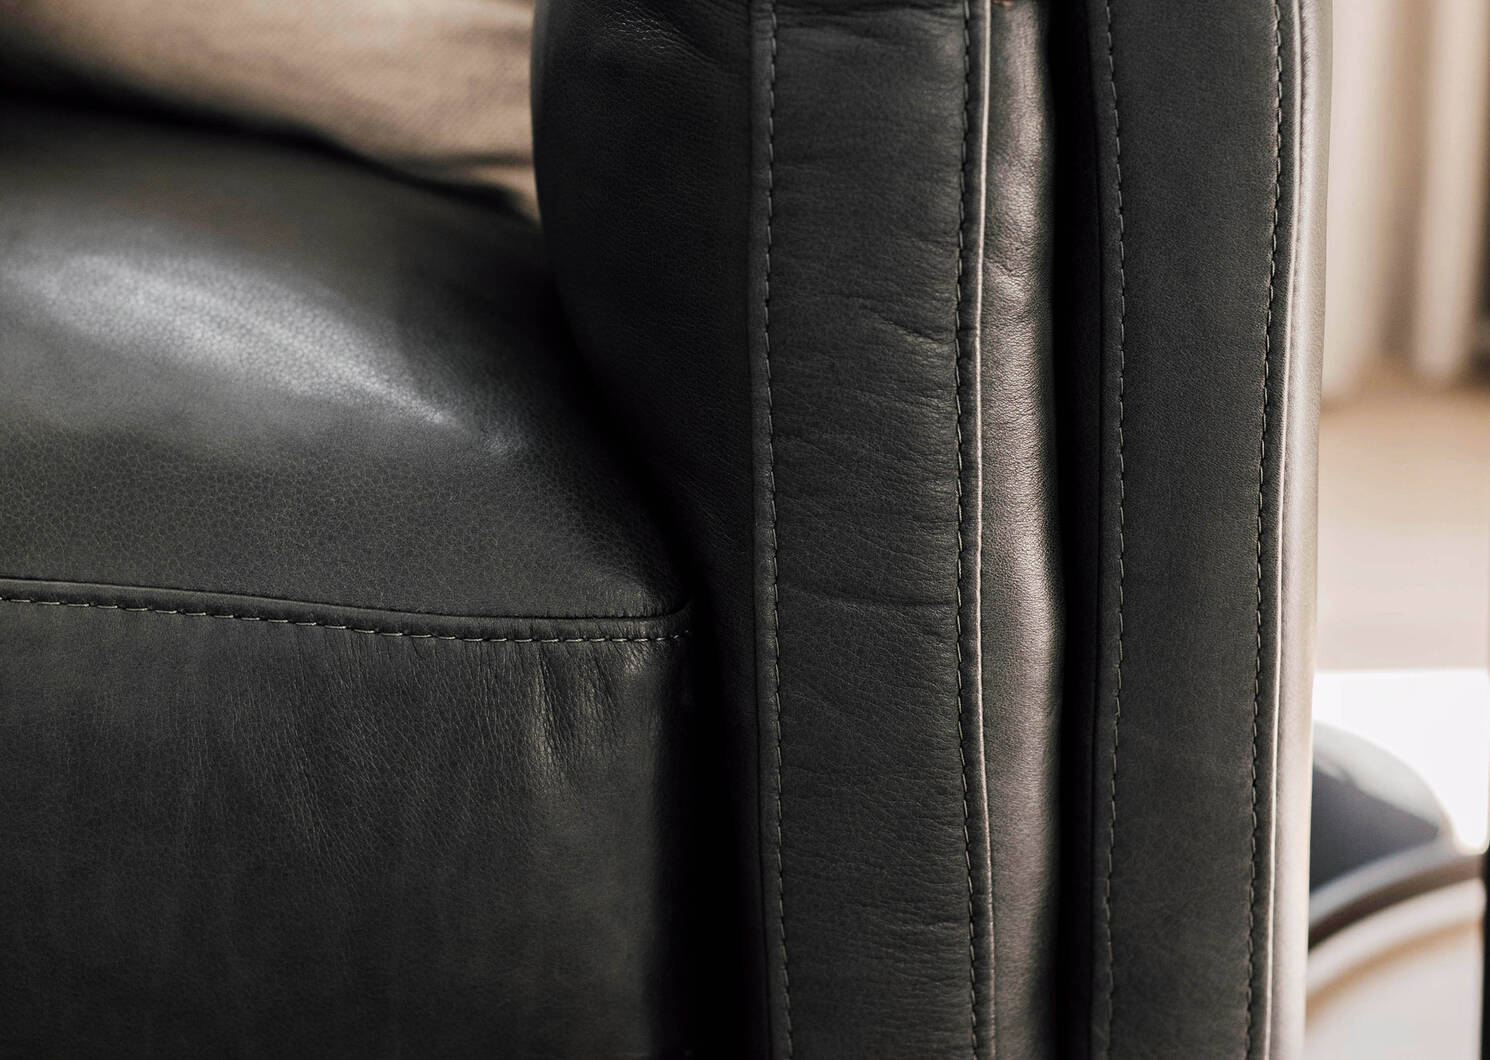 Renfrew Leather Sofa 94" -Adler Grey